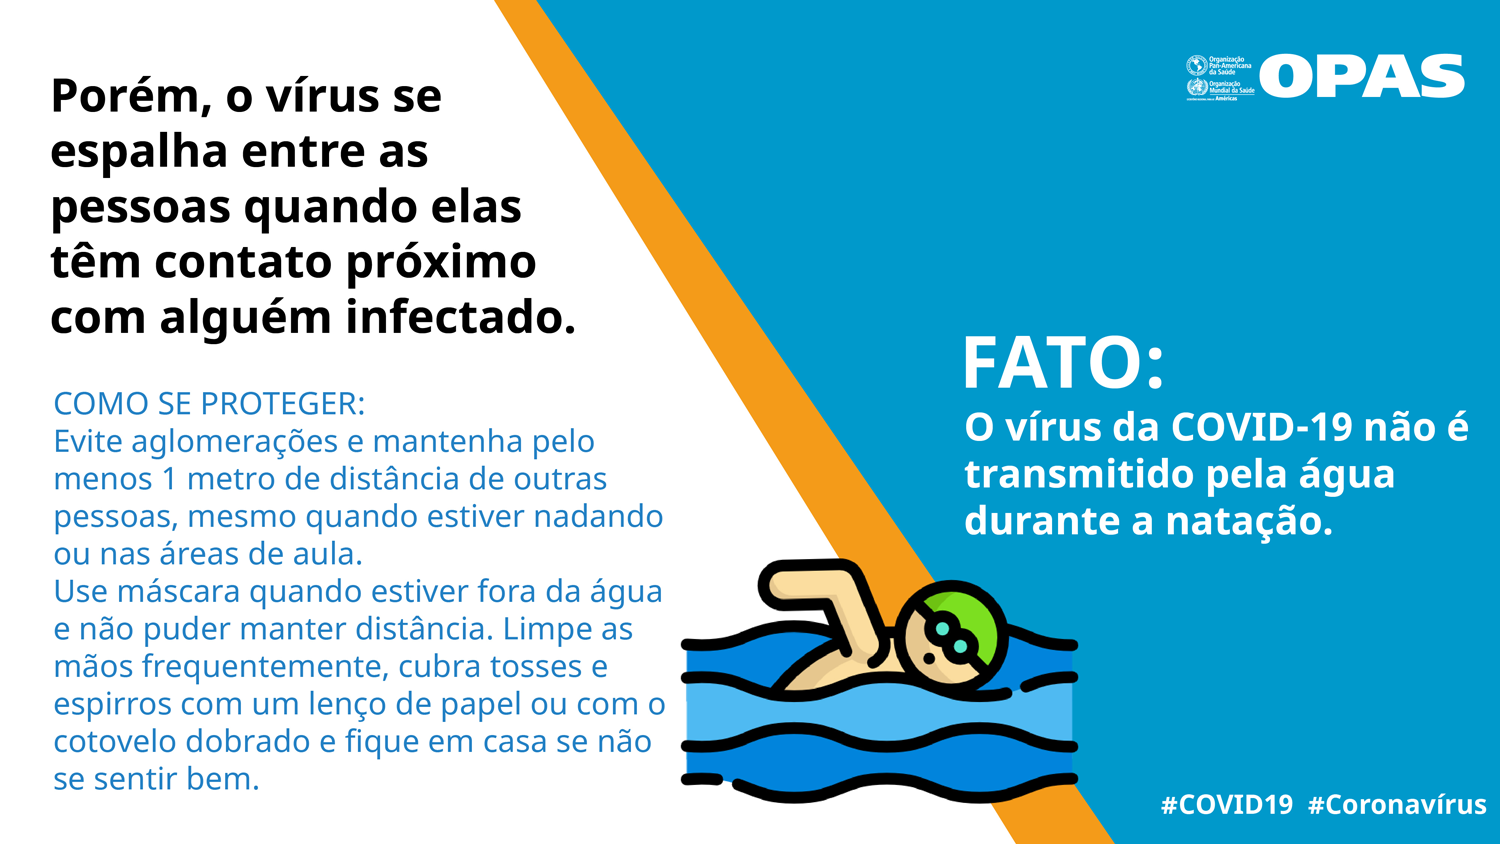 FATO: O vírus da COVID-19 não é transmitido pela água durante a natação.